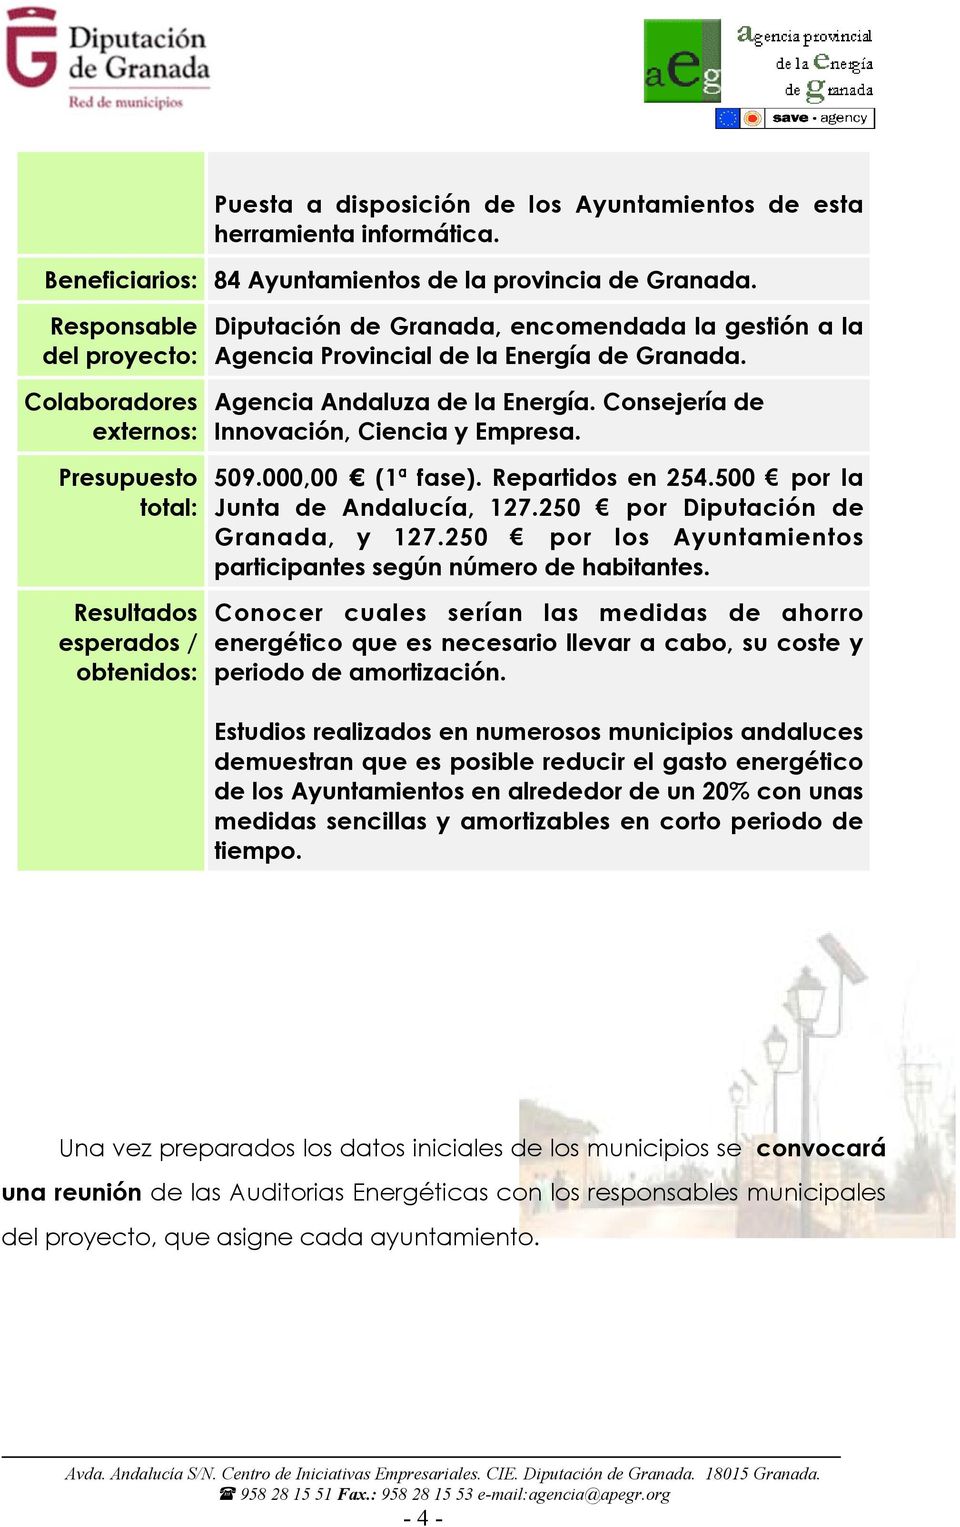 Agencia Andaluza de la Energía. Consejería de Innovación, Ciencia y Empresa. 509.000,00 (1ª fase). Repartidos en 254.500 por la Junta de Andalucía, 127.250 por Diputación de Granada, y 127.